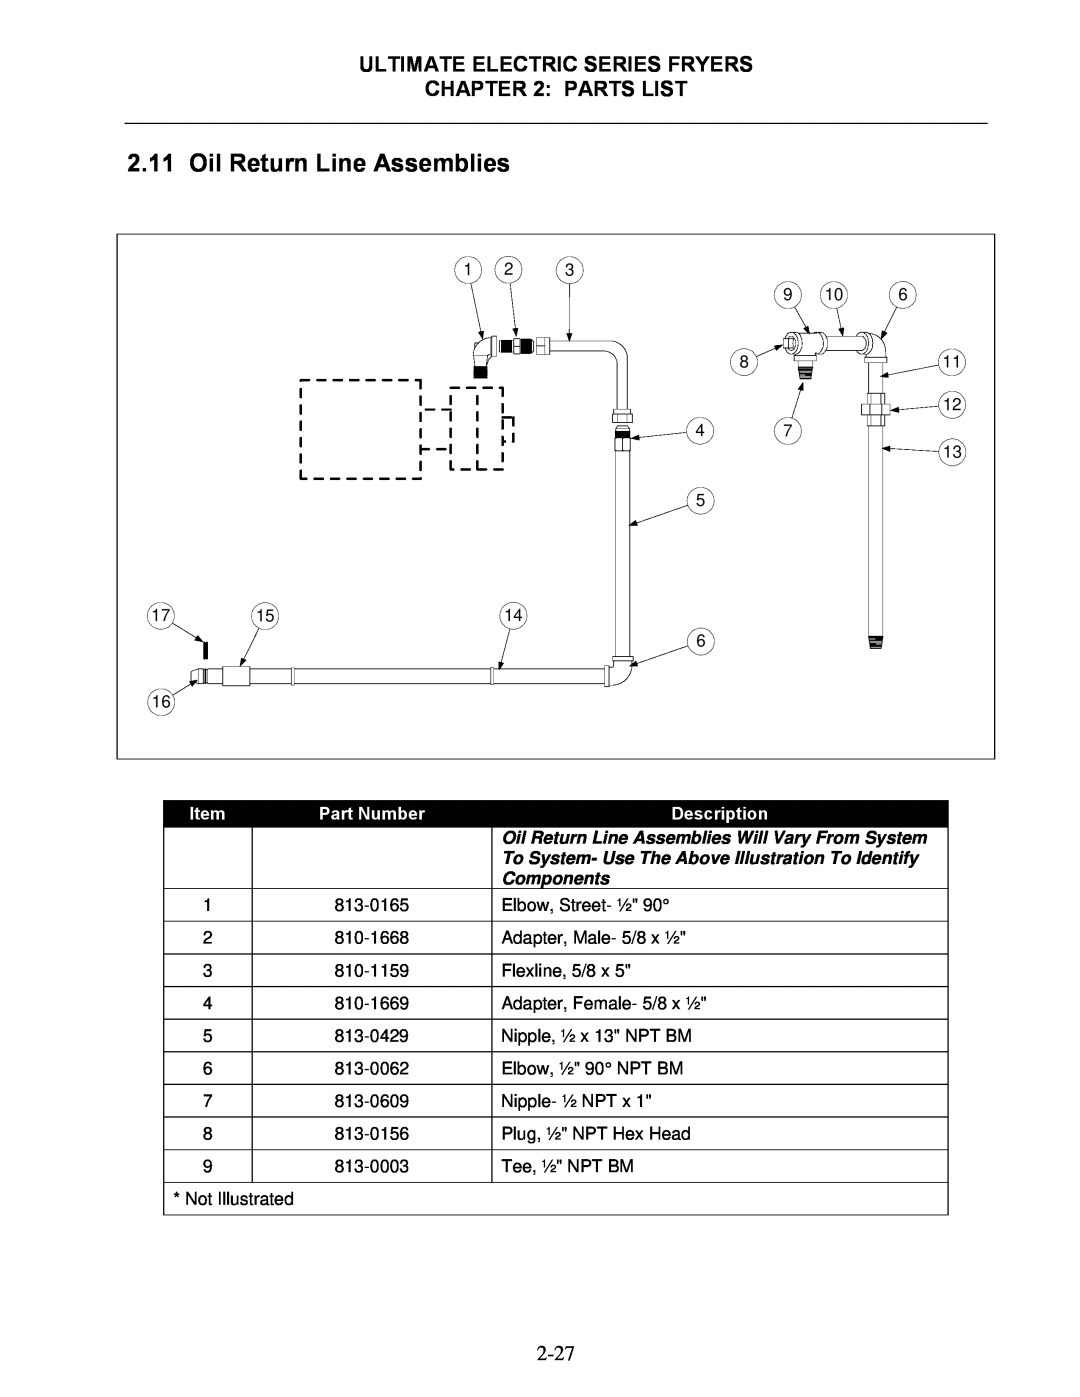 Frymaster Oil Return Line Assemblies, Ultimate Electric Series Fryers, Parts List, Part Number, Description, Components 